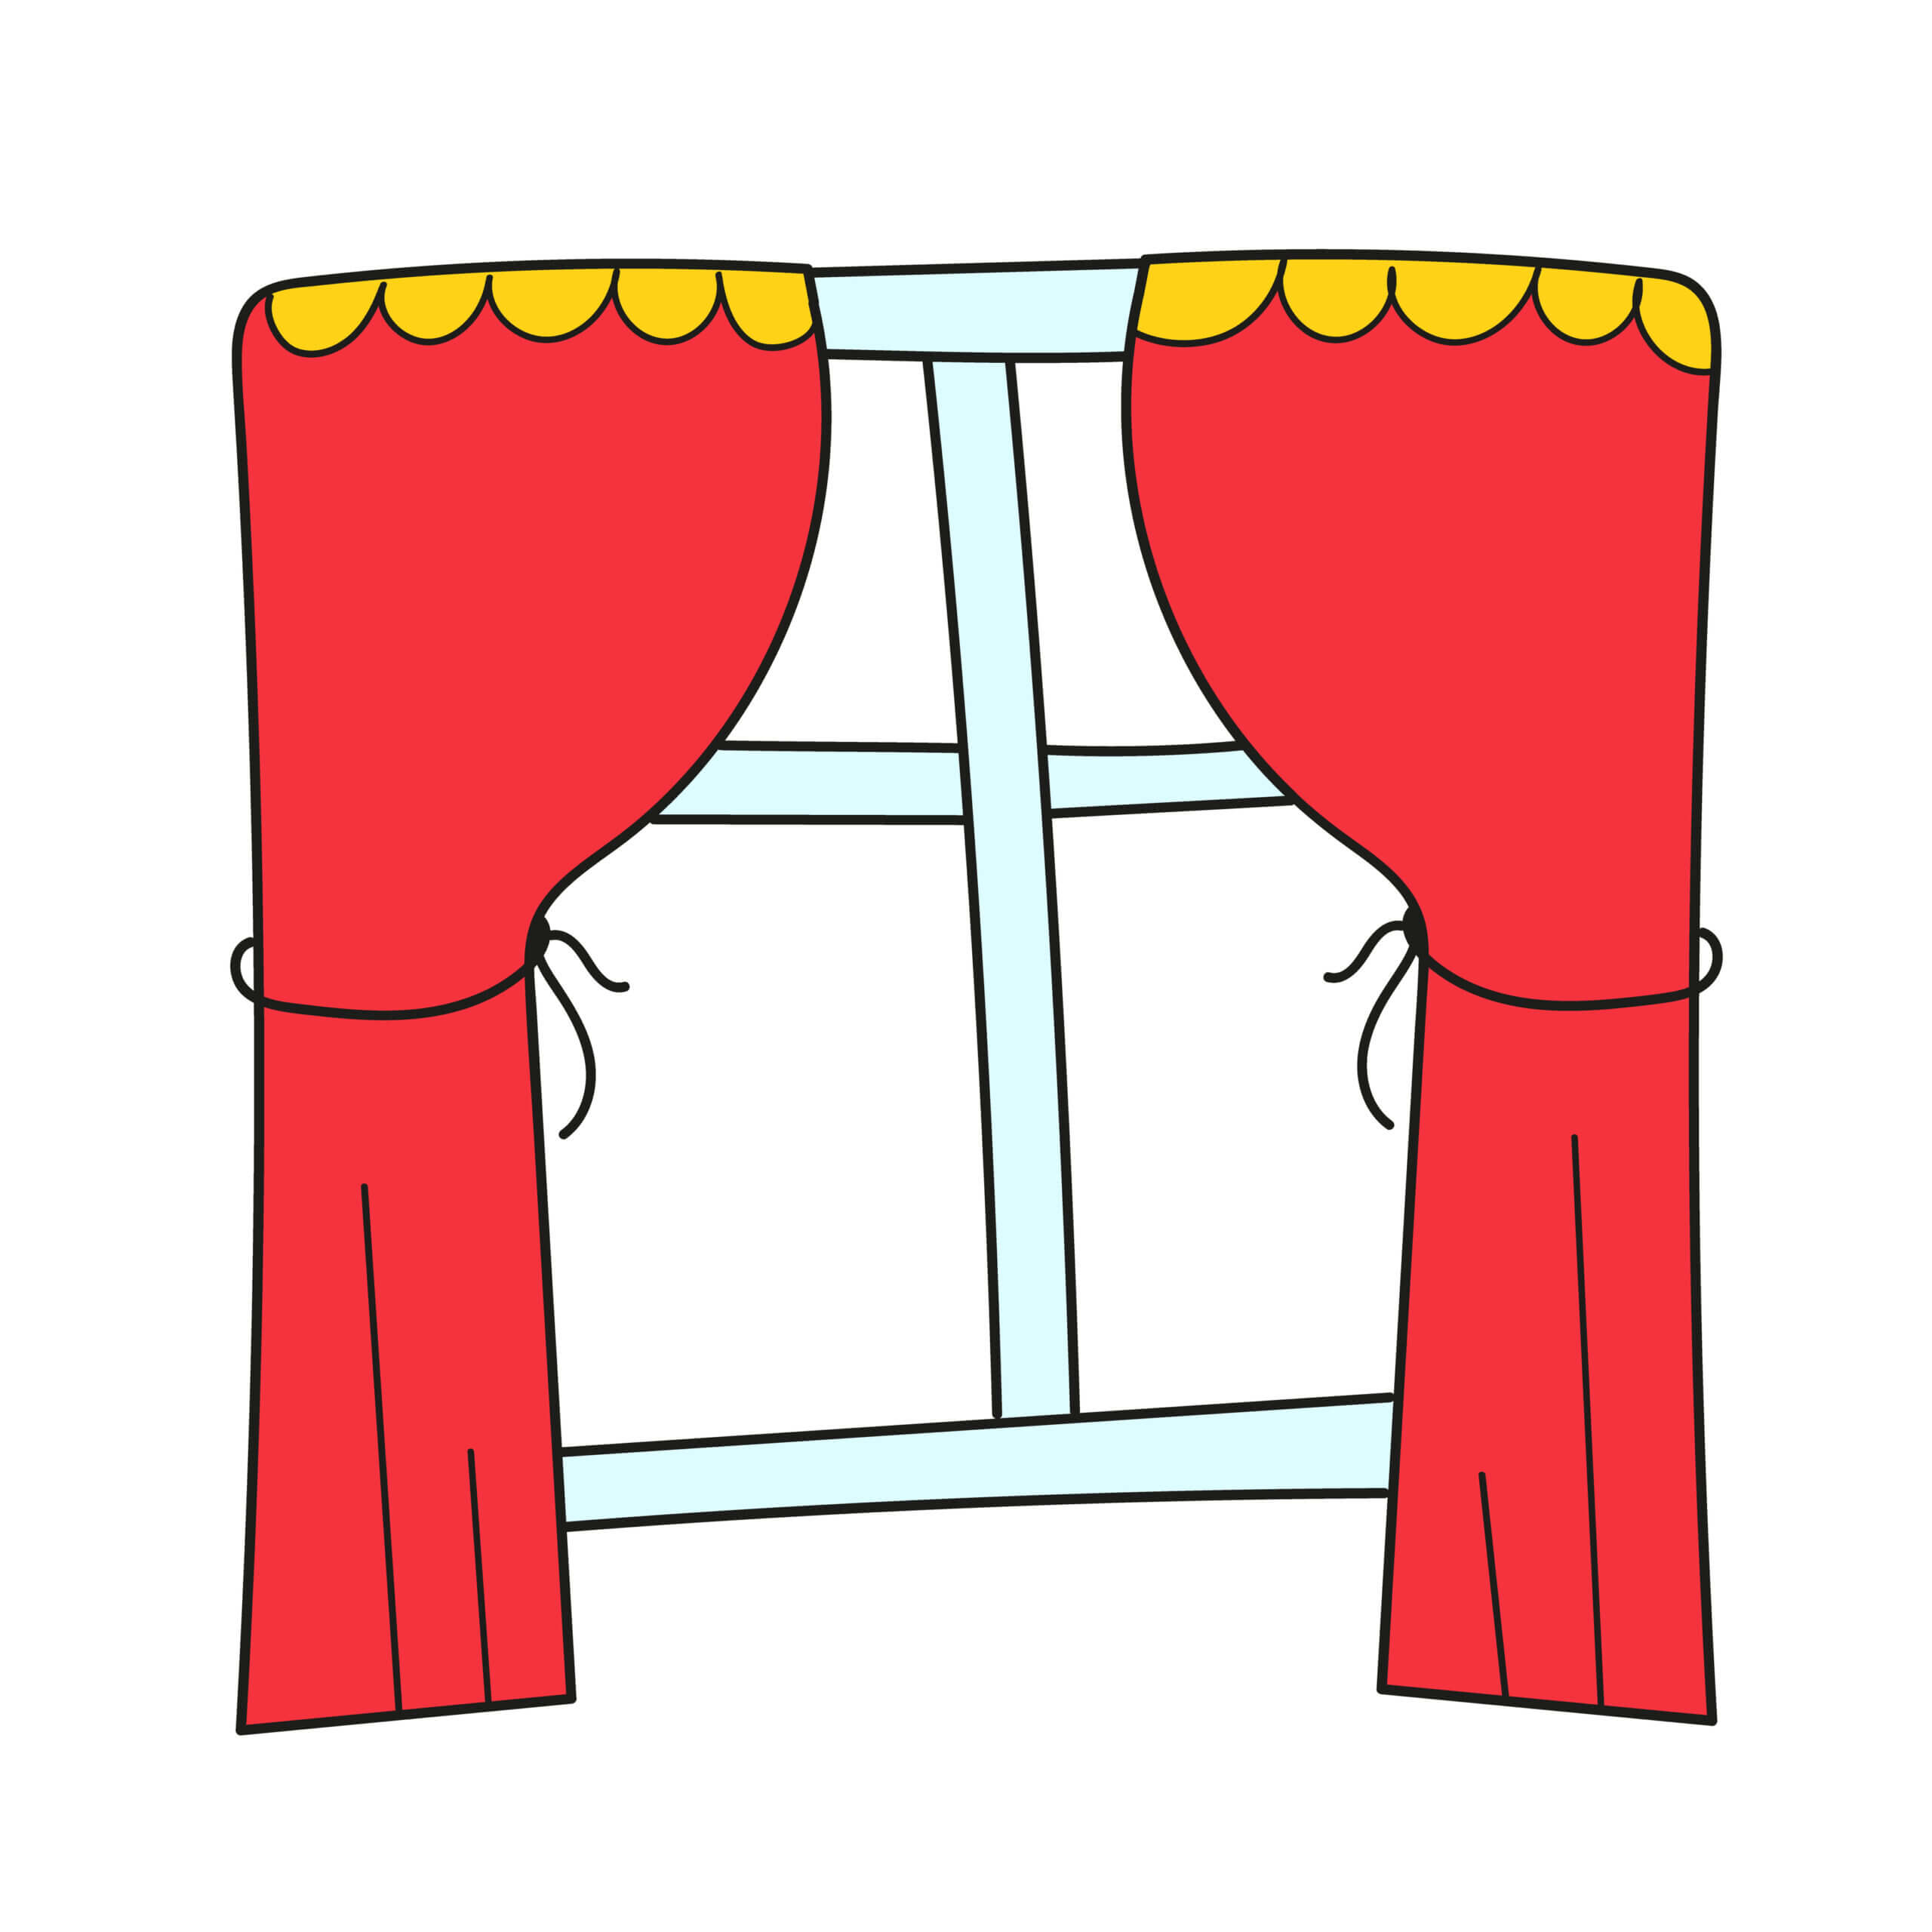 7. Curtain